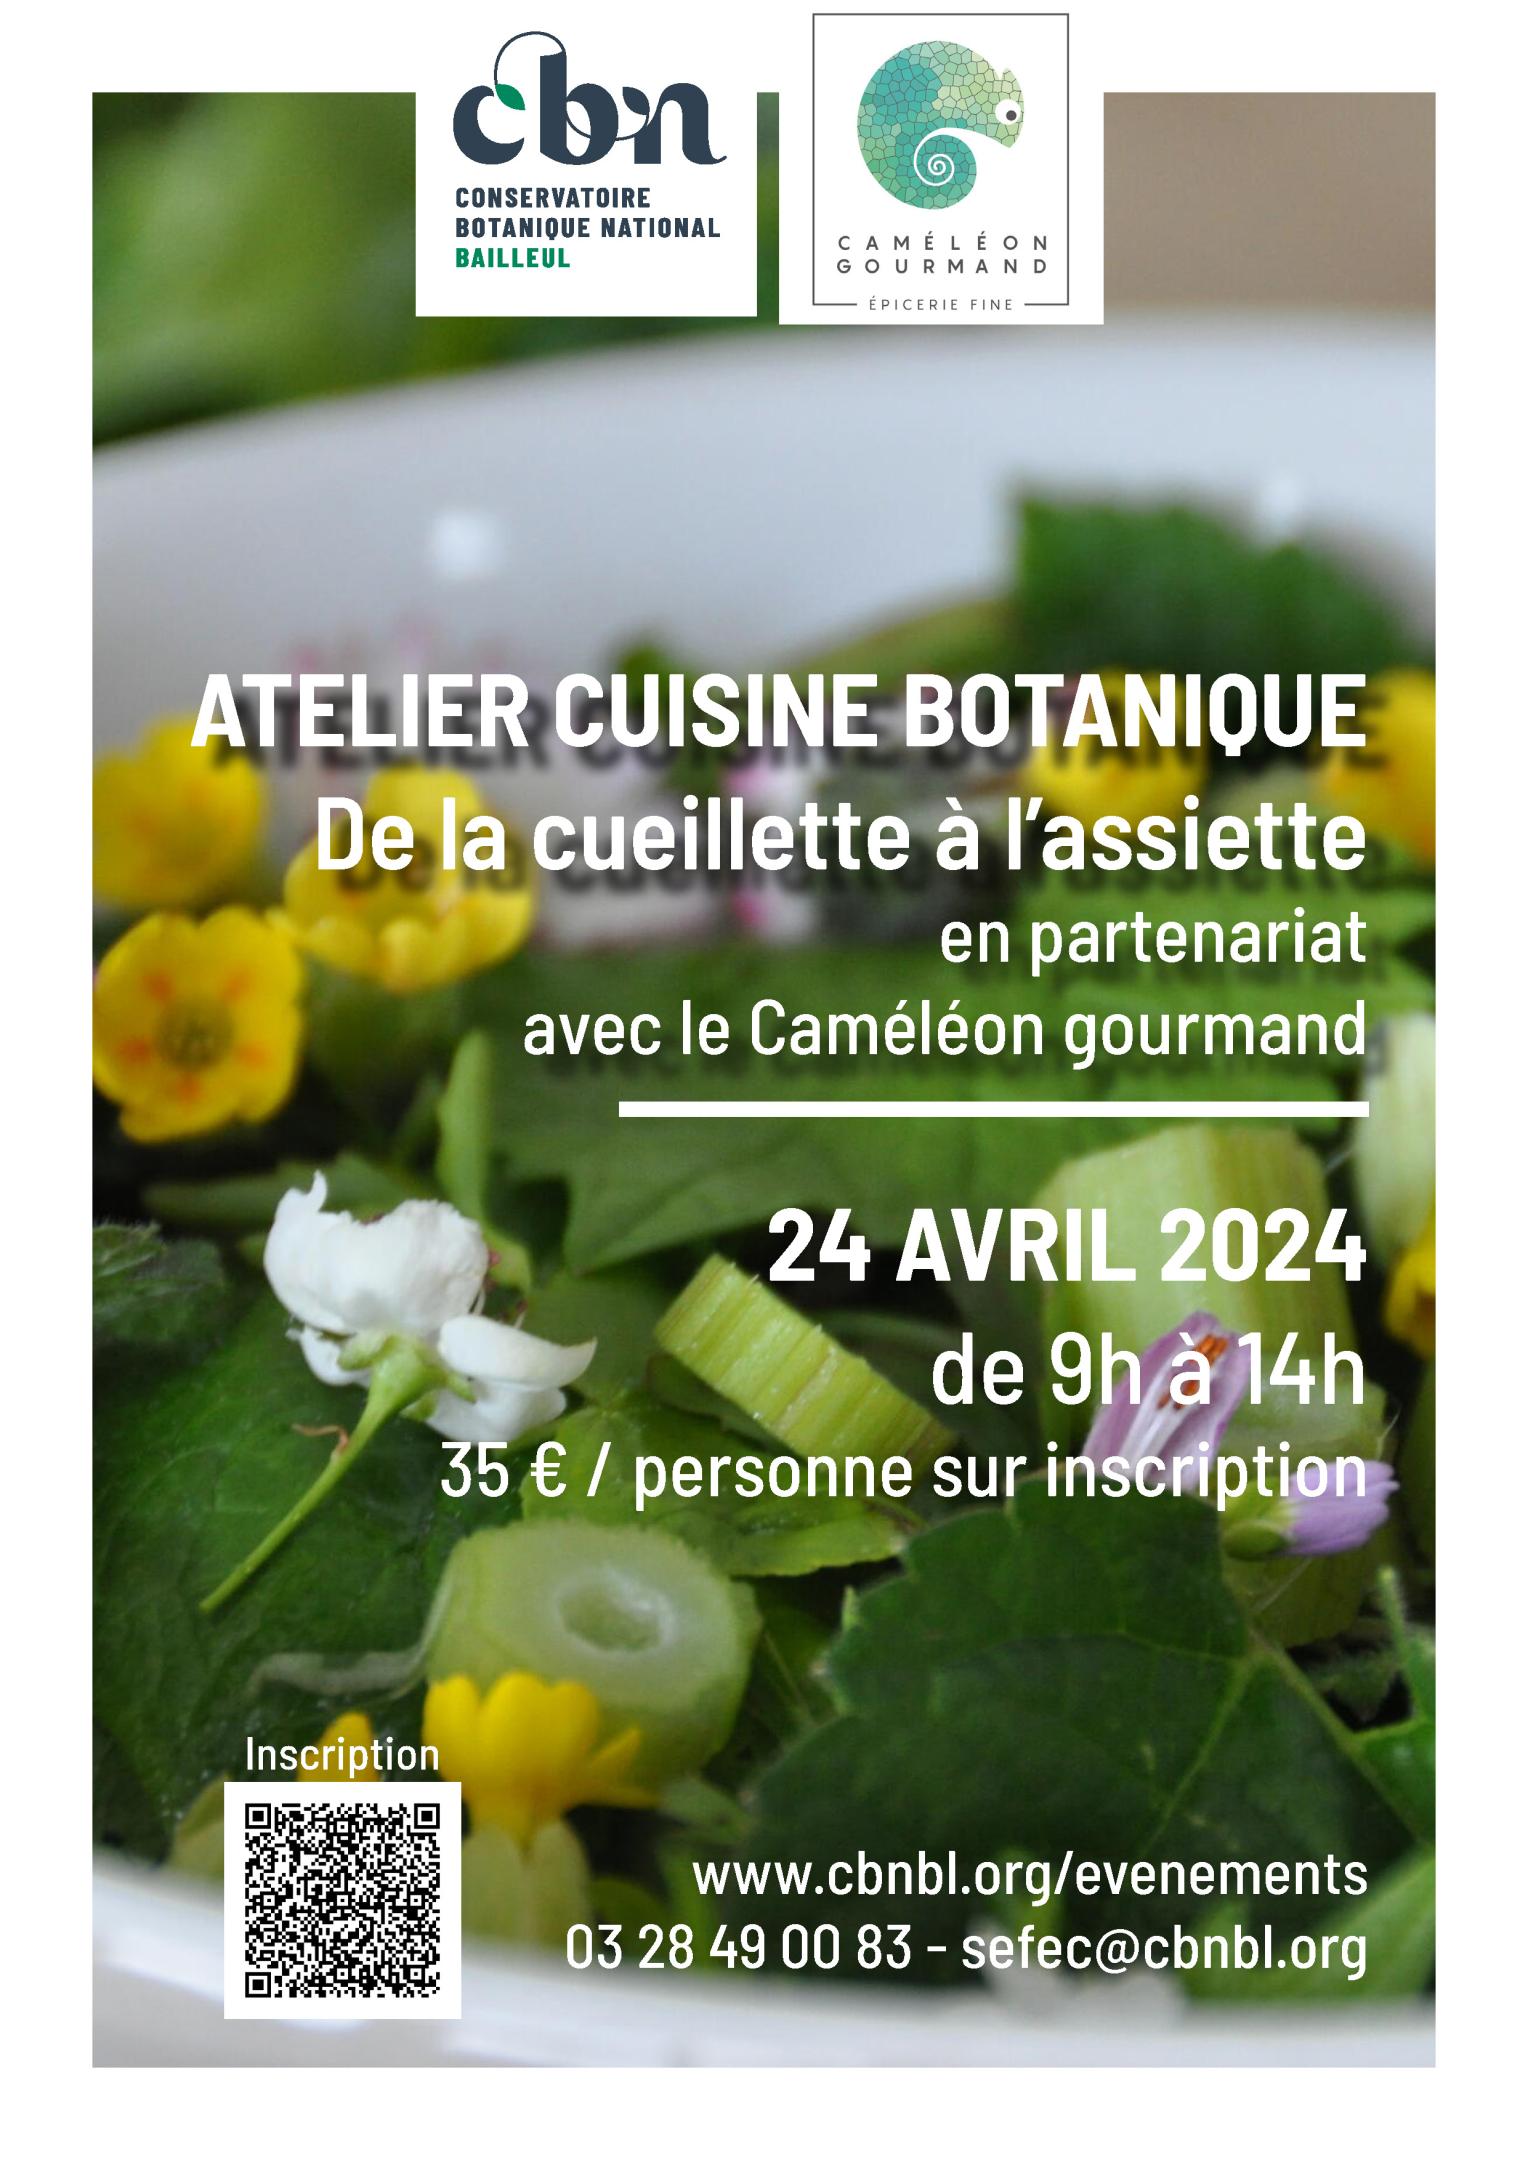 Atelier "cuisine botanique" au CBN de Bailleul